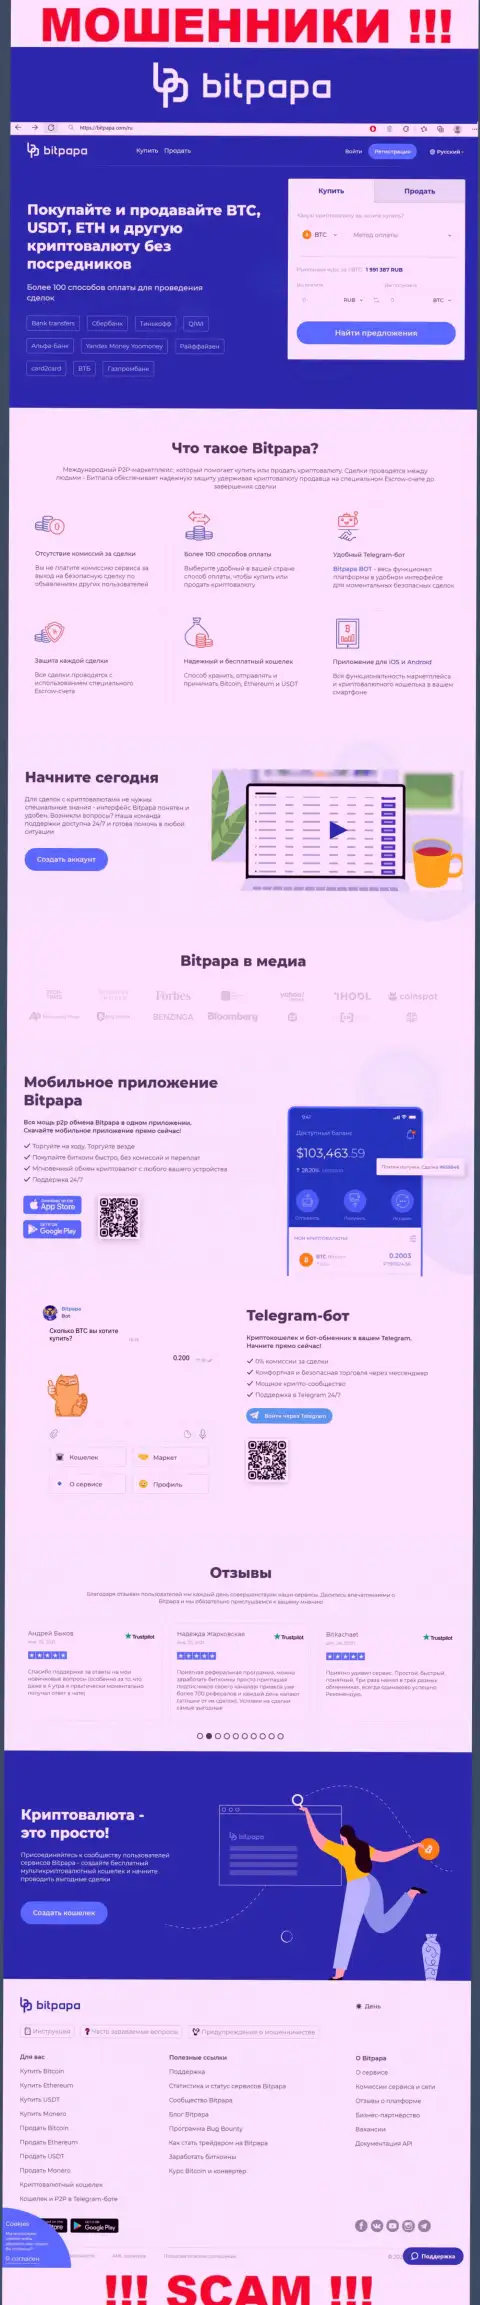 Фейковая инфа от компании БитПапа ИК ФЗК ЛЛК на официальном информационном портале мошенников